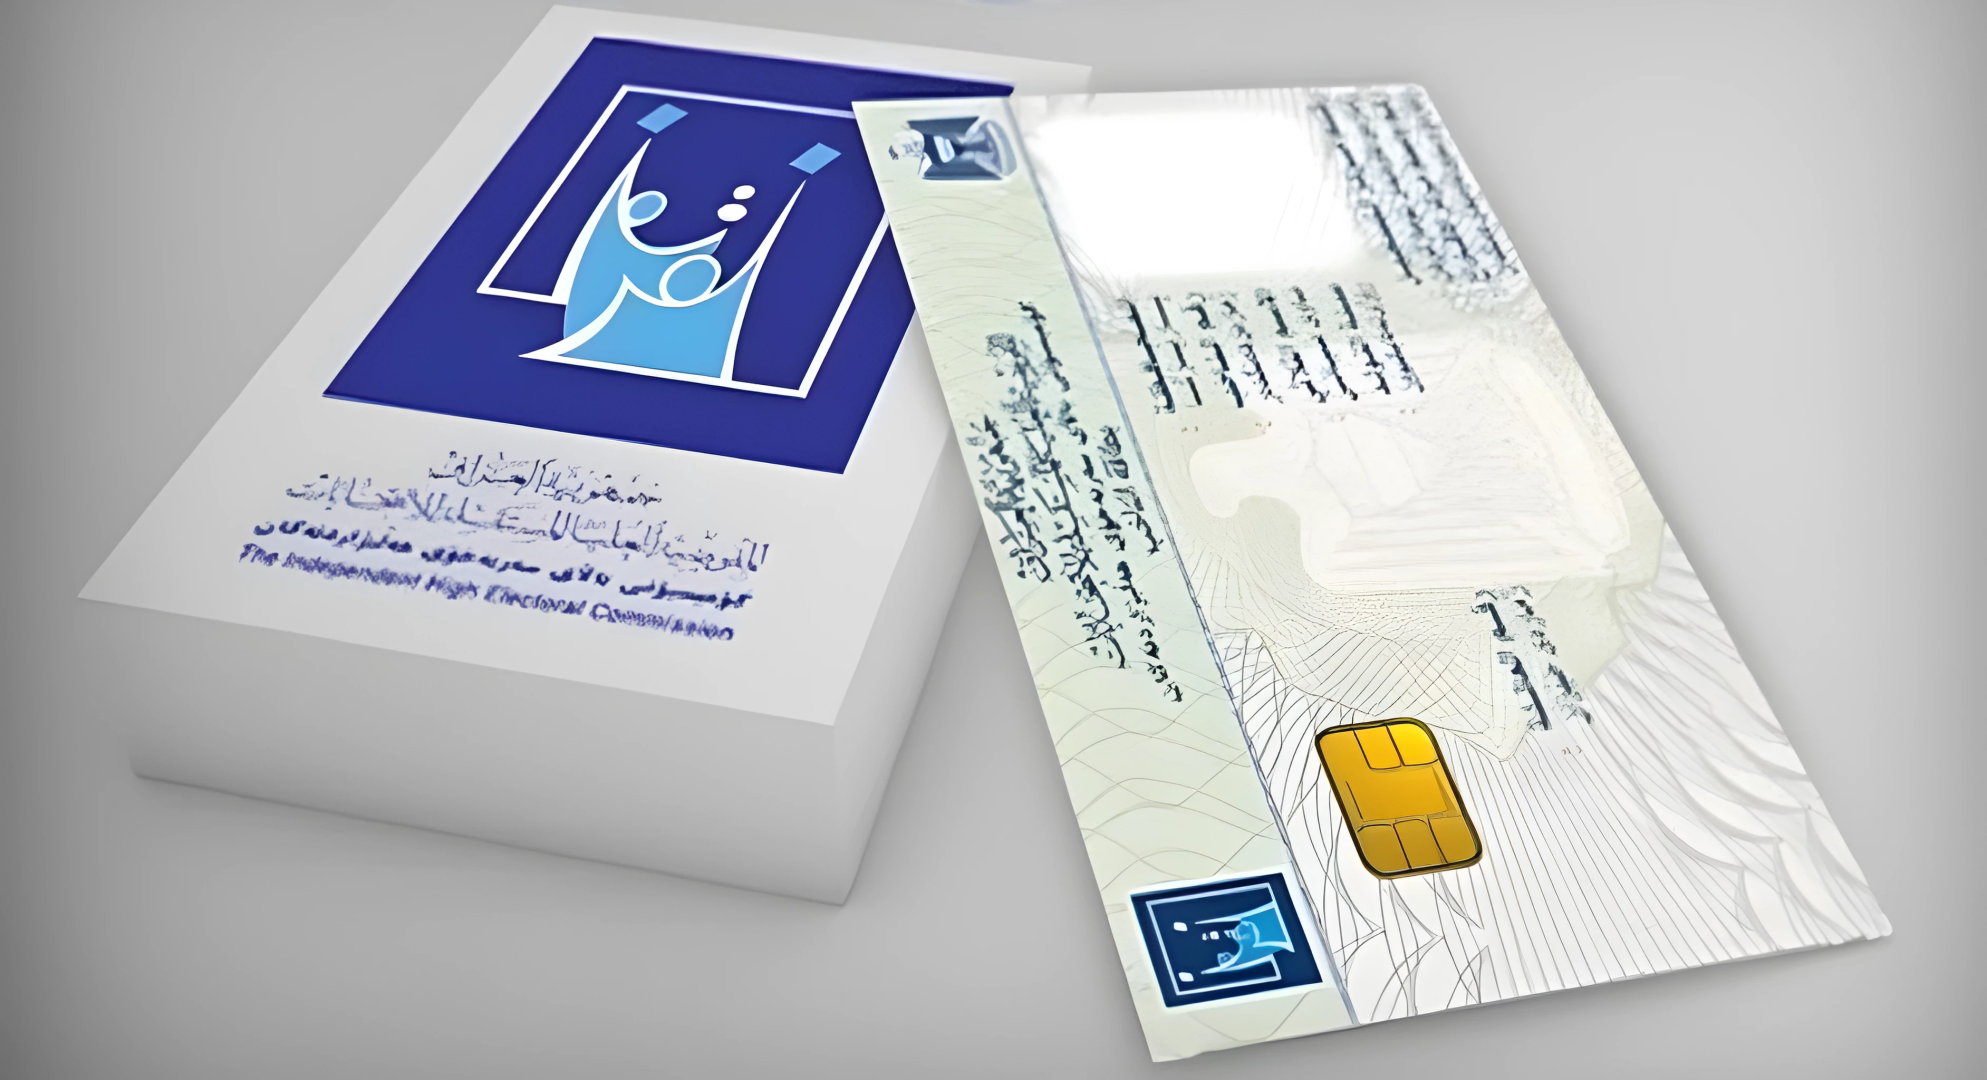 السليمانية في المركز الأول بتوزيع البطاقات البيومترية على مستوى العراق